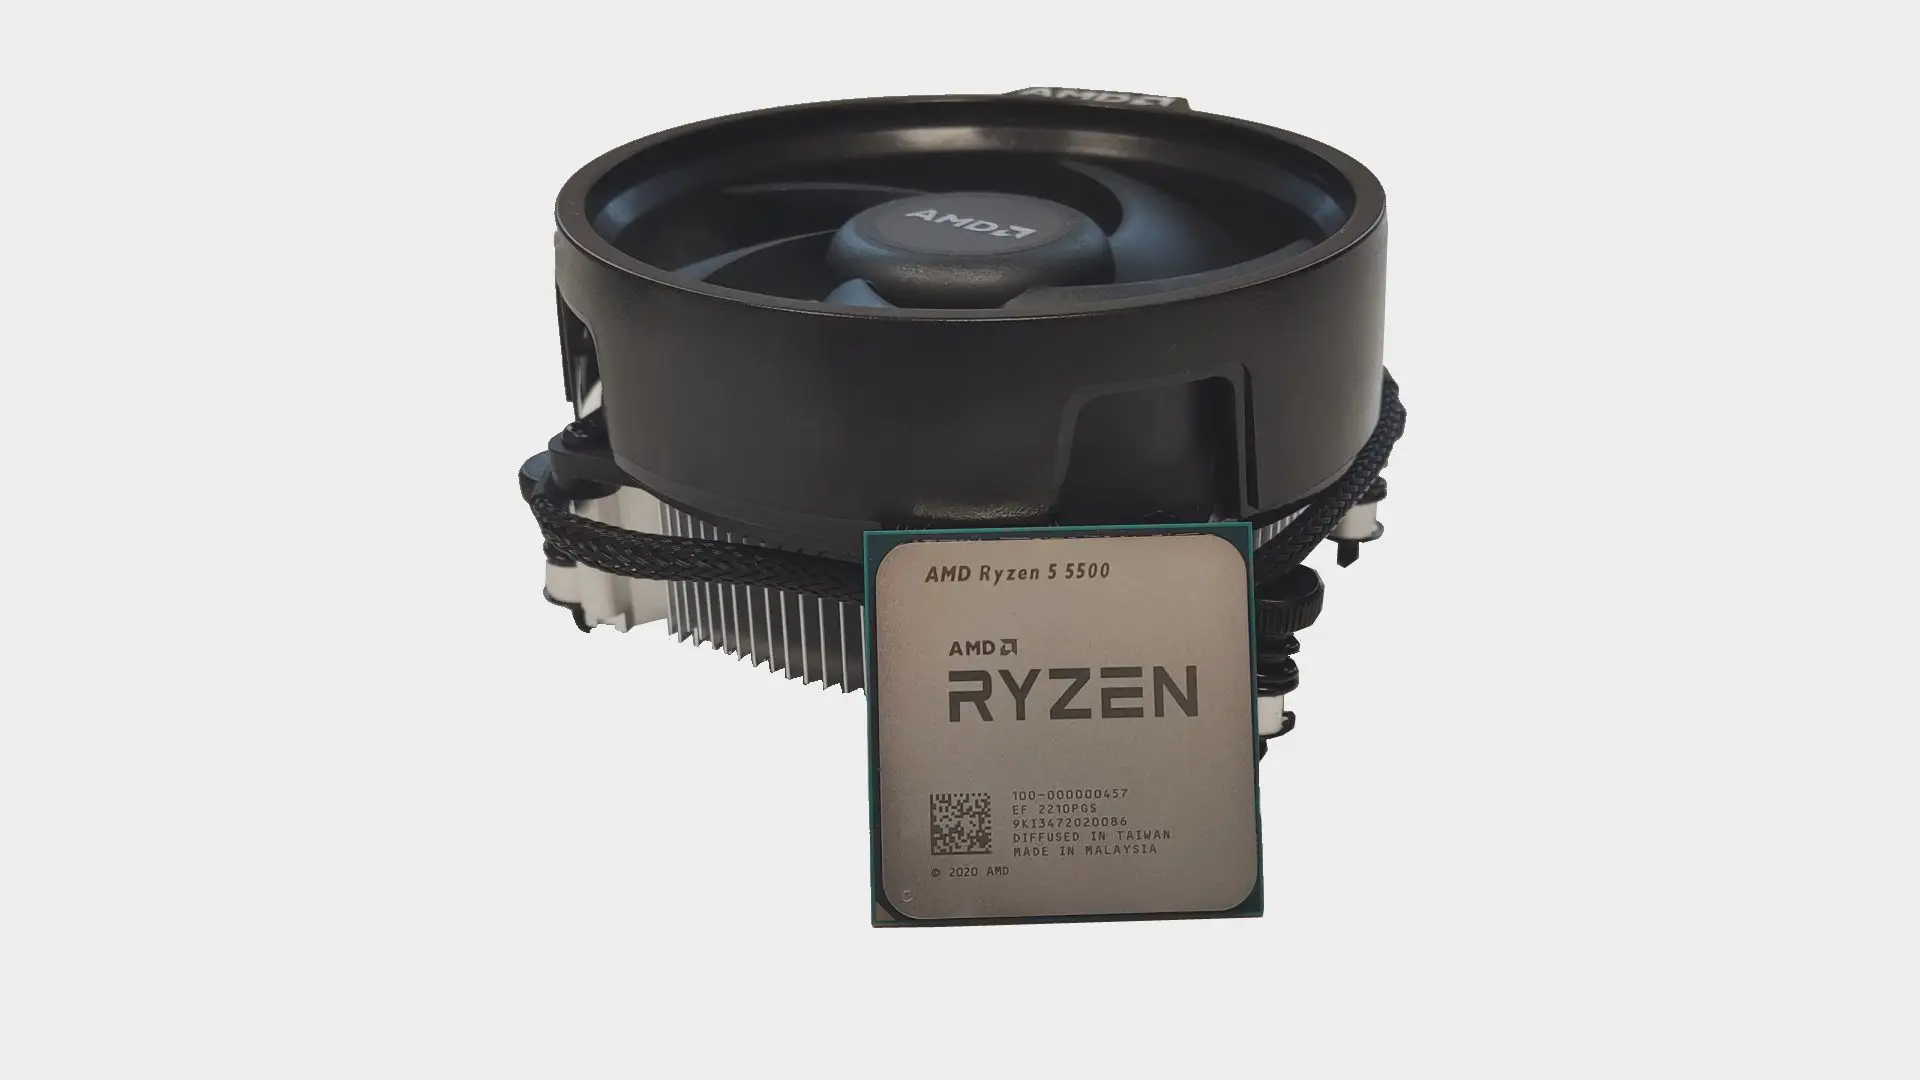 AMD Ryzen 5 5500 4